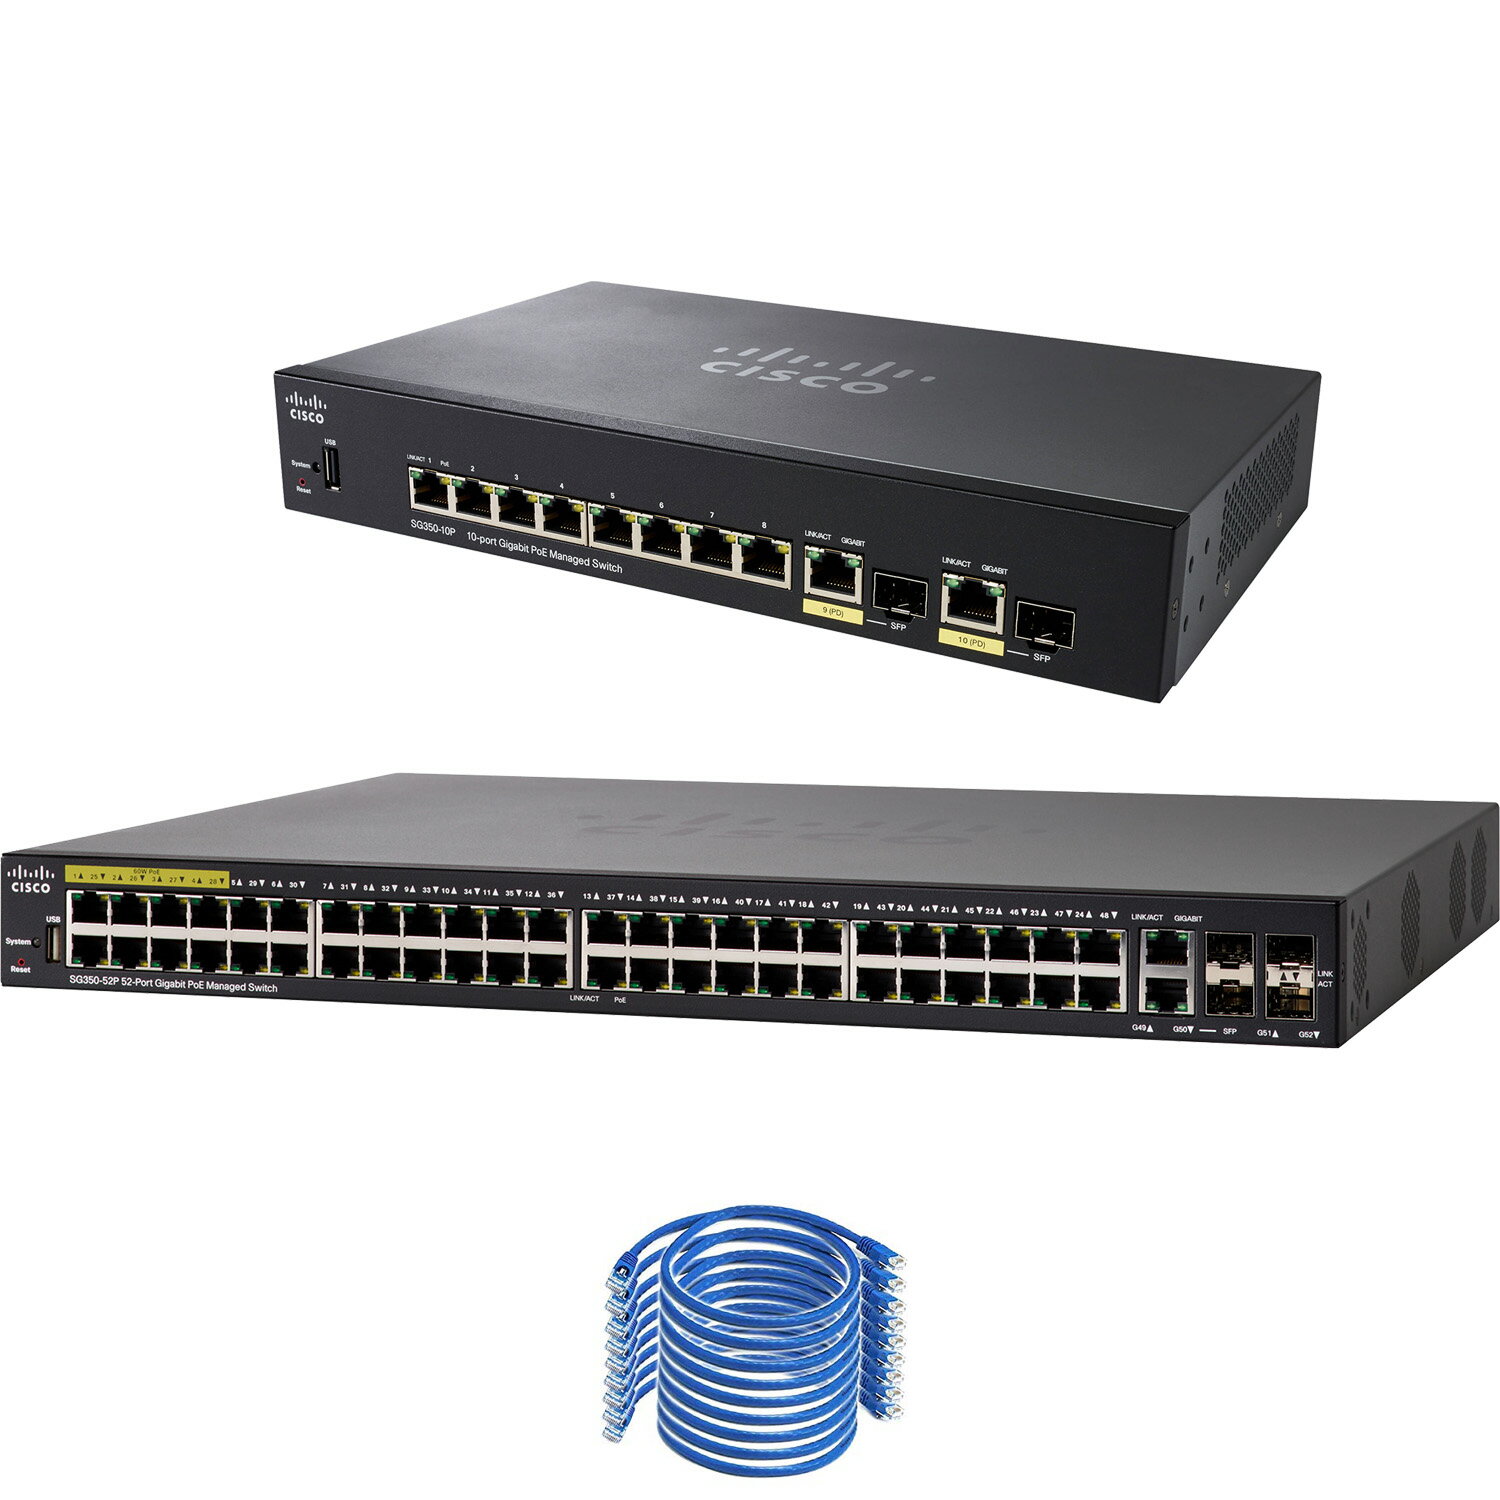 特価新作CISCO SG350-10MP イーサネットポート ルーター・ネットワーク機器